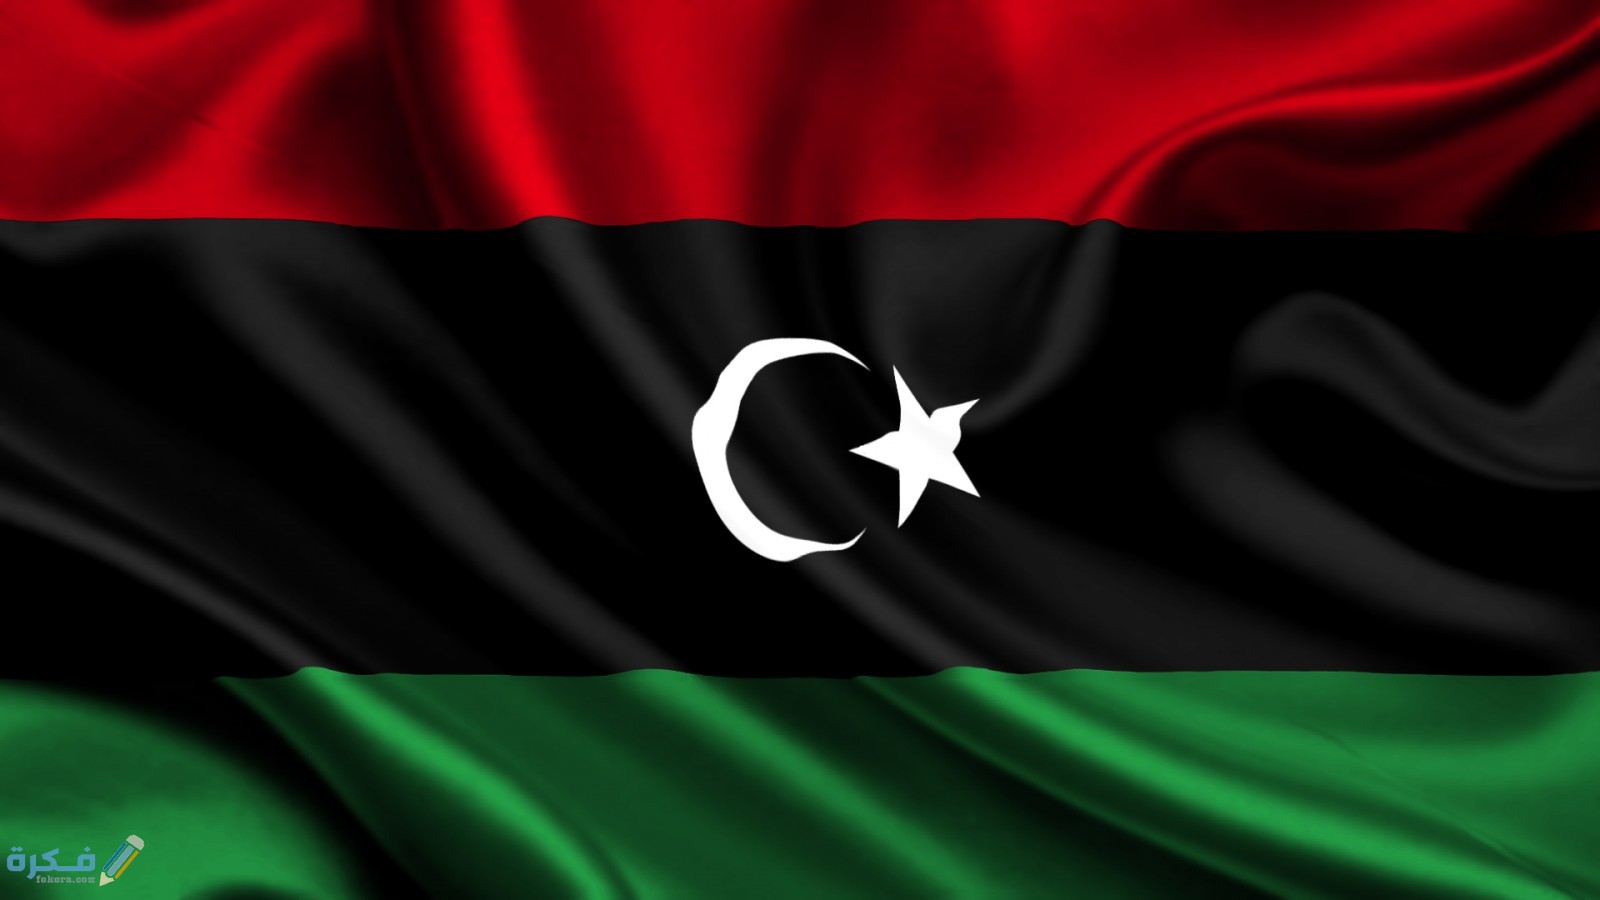 صور علم ليبيا 2020 - موقع فكرة 